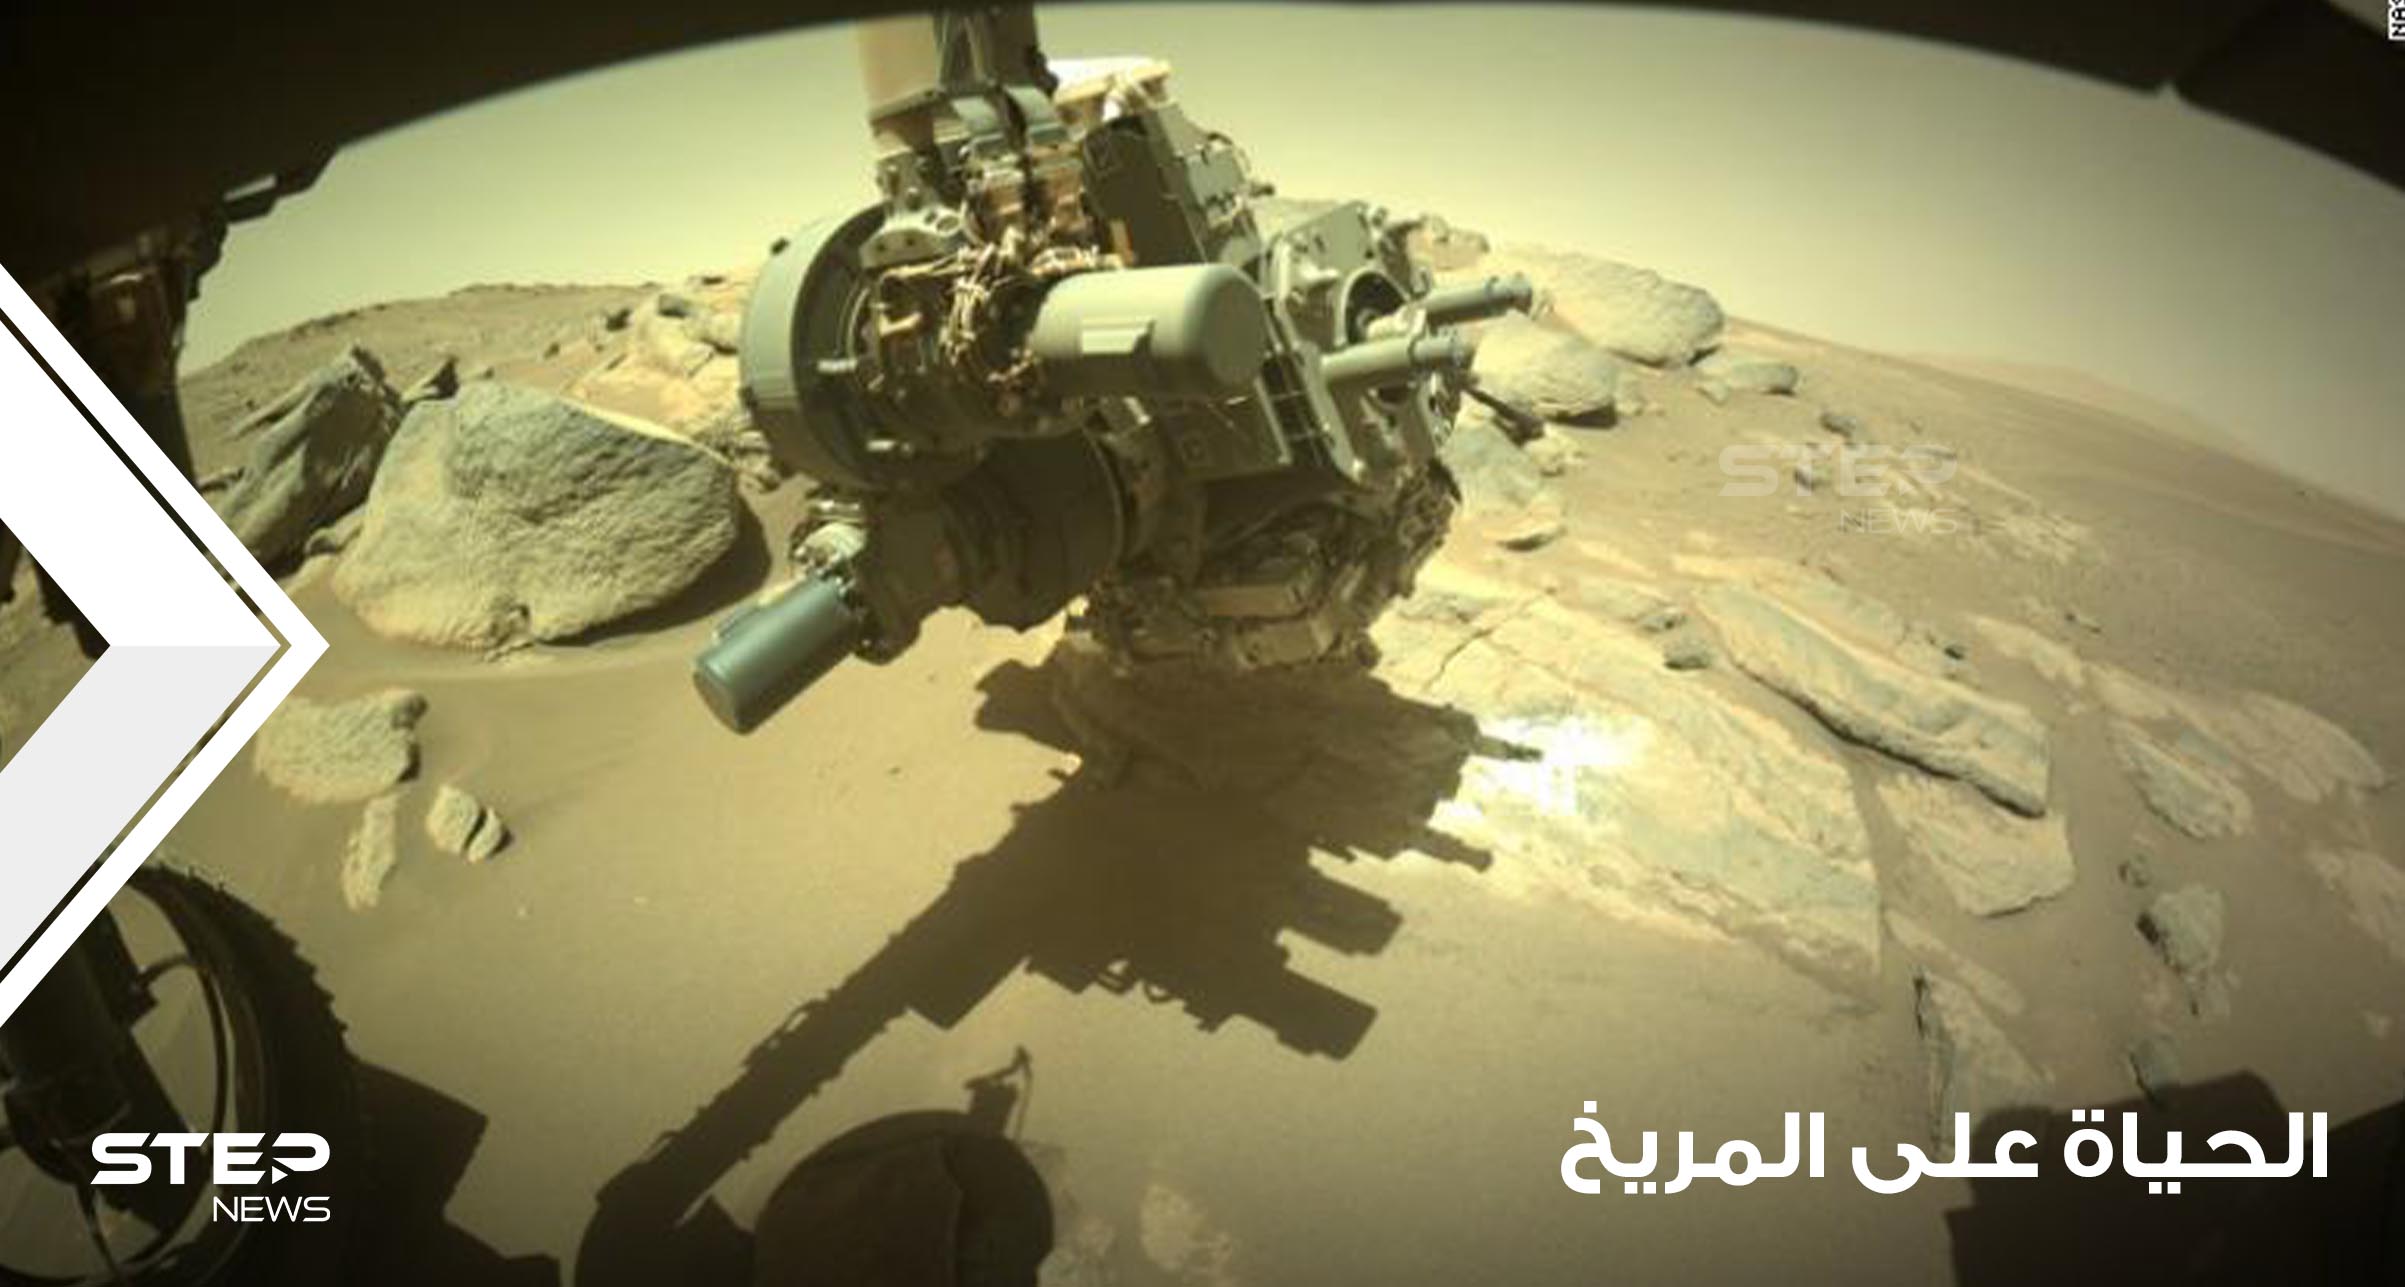 شاهد|| اكتشاف "لم يراه أحد من قبل" يدعم فرضية وجود حياة على المريخ (صور)